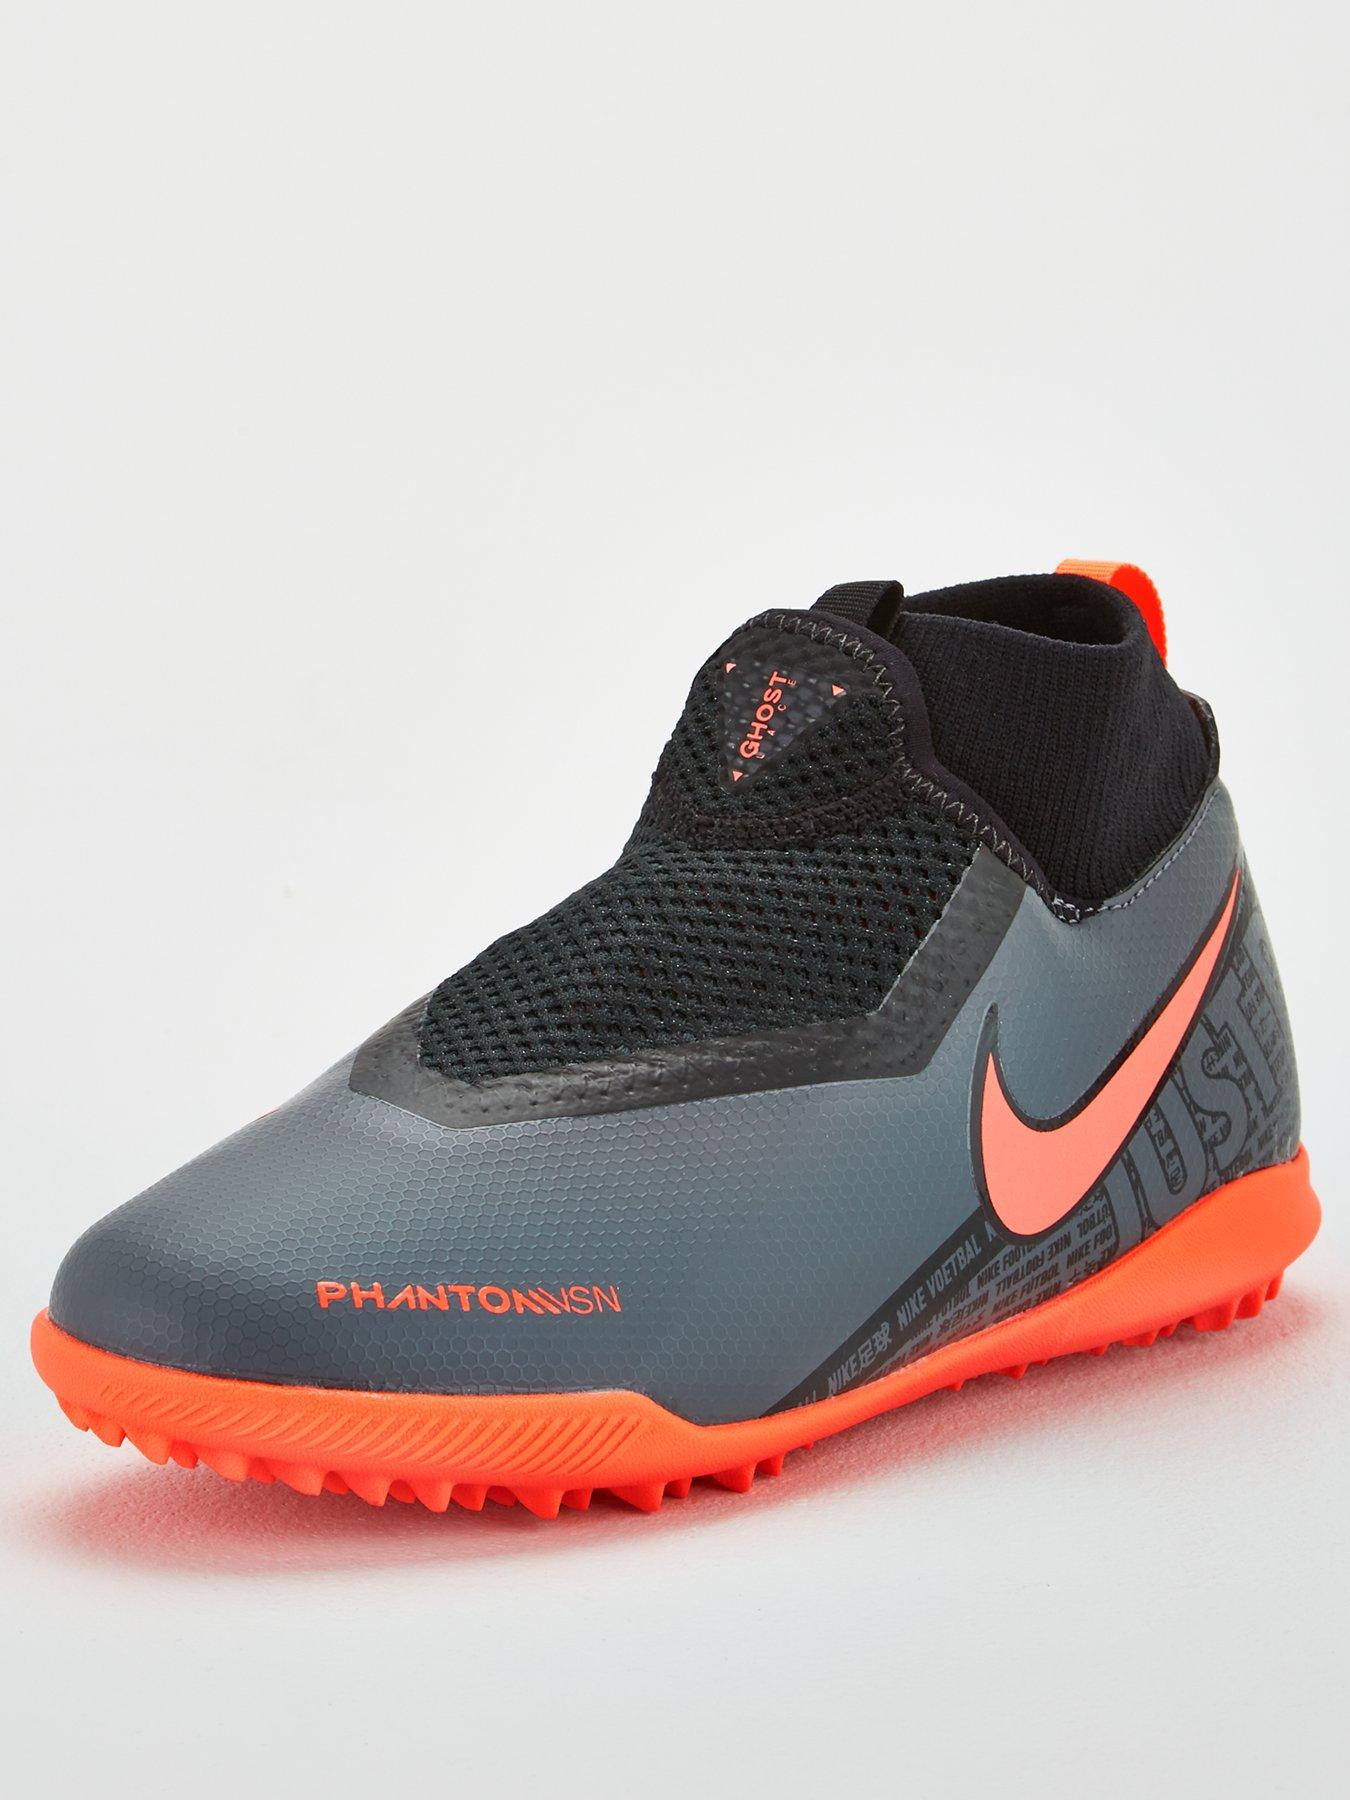 Nike Hypervenom Phantom 3 Elite SG Pro Mens Soccer